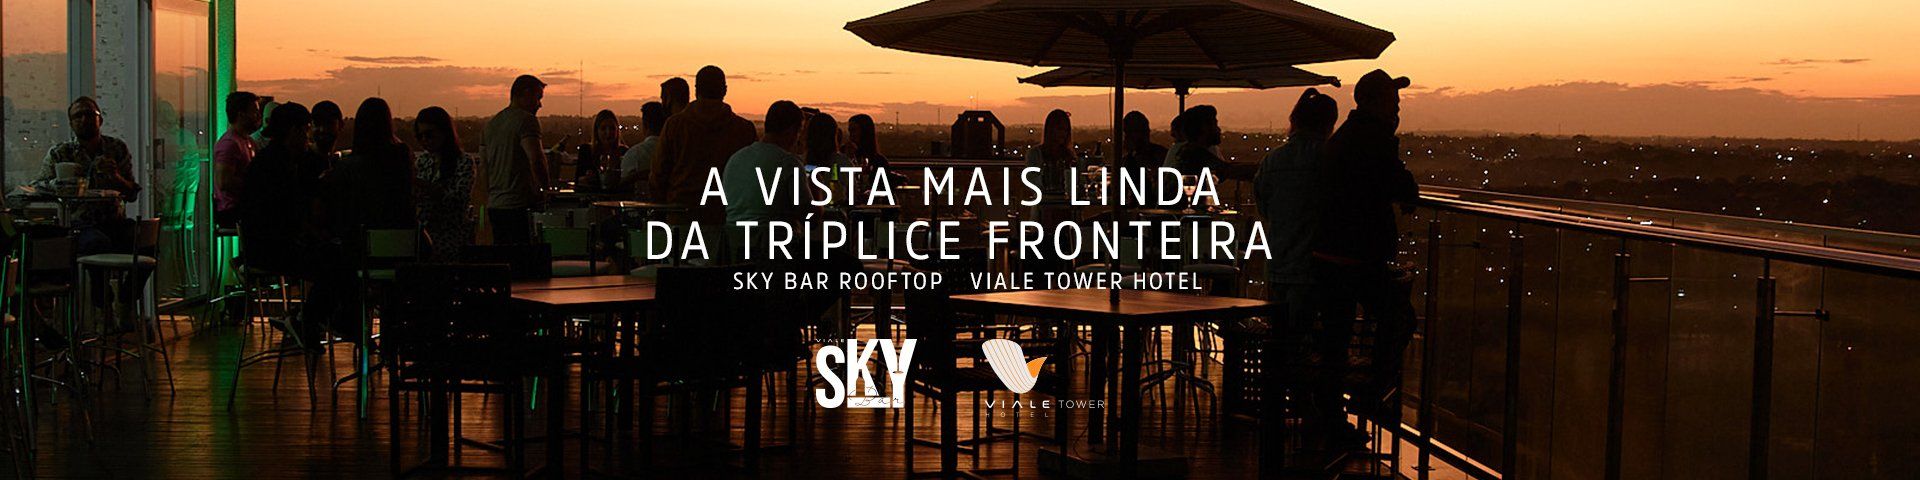 Sky Bar Rooftop em Foz do Iguaçu